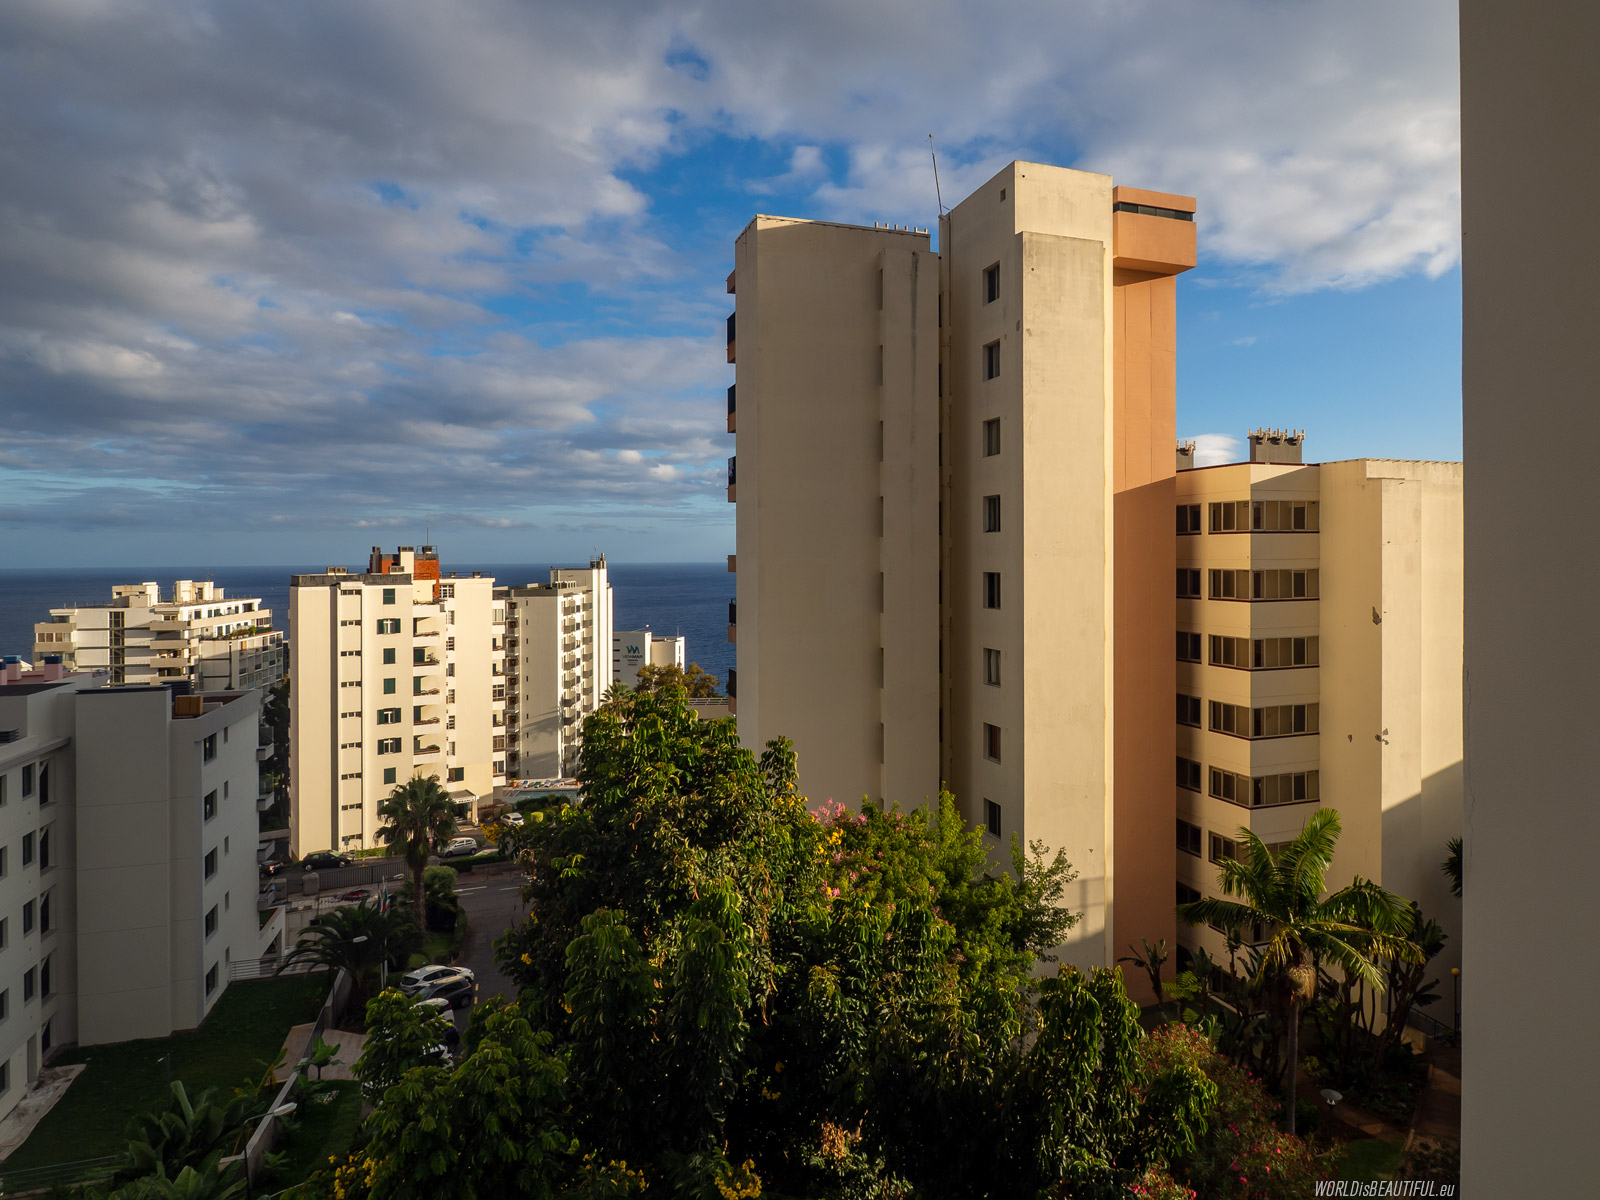 Widok z okna - Hotel Dorisol Estrelicia